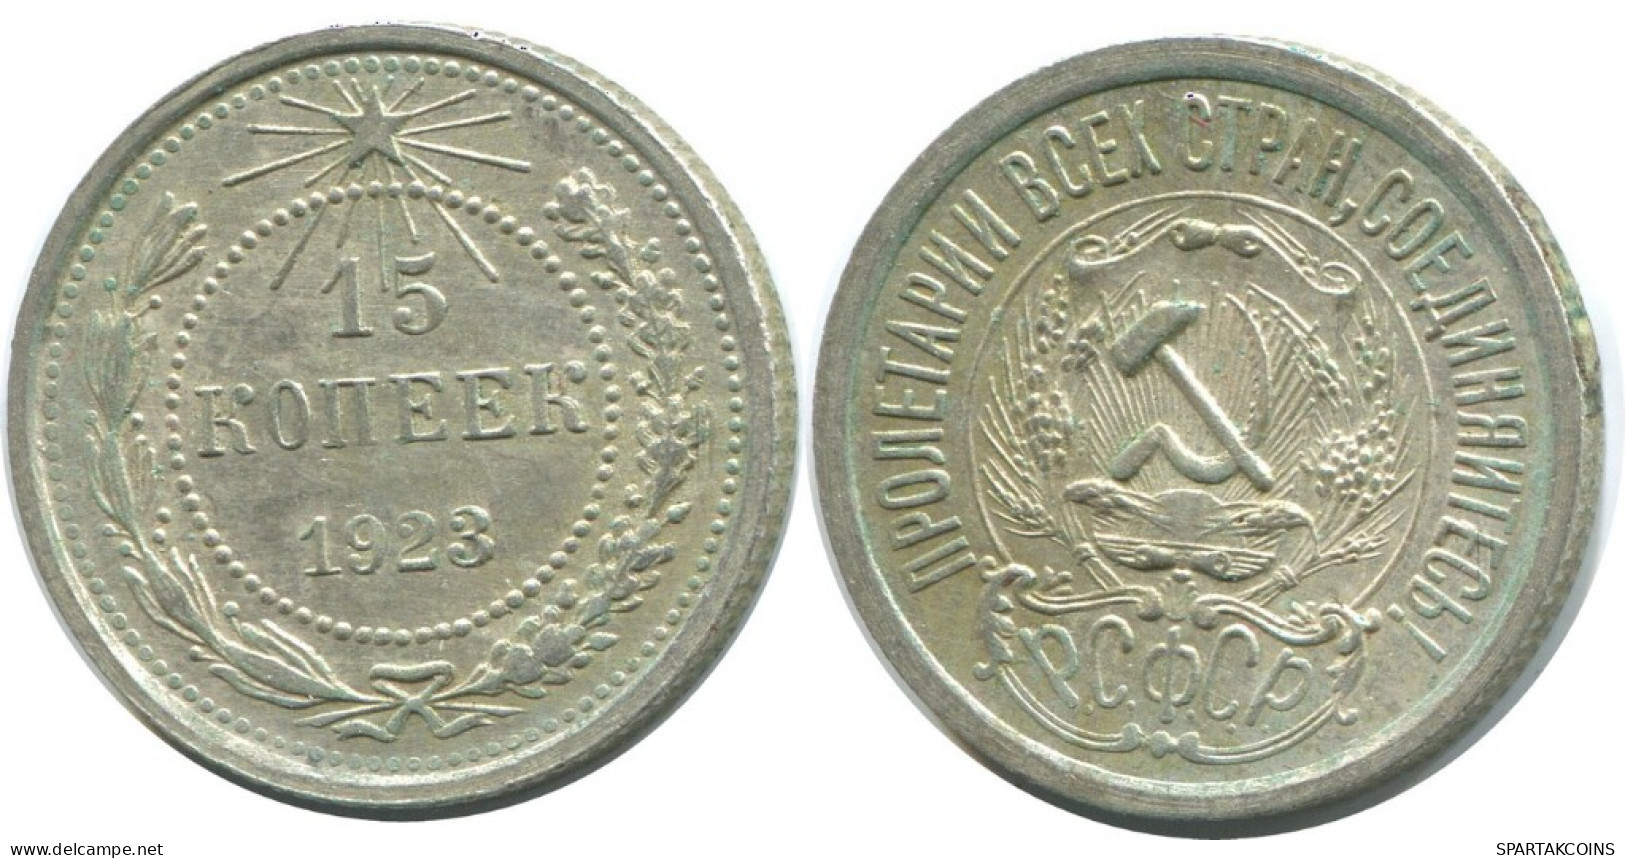 15 KOPEKS 1923 RUSSLAND RUSSIA RSFSR SILBER Münze HIGH GRADE #AF028.4.D.A - Russia